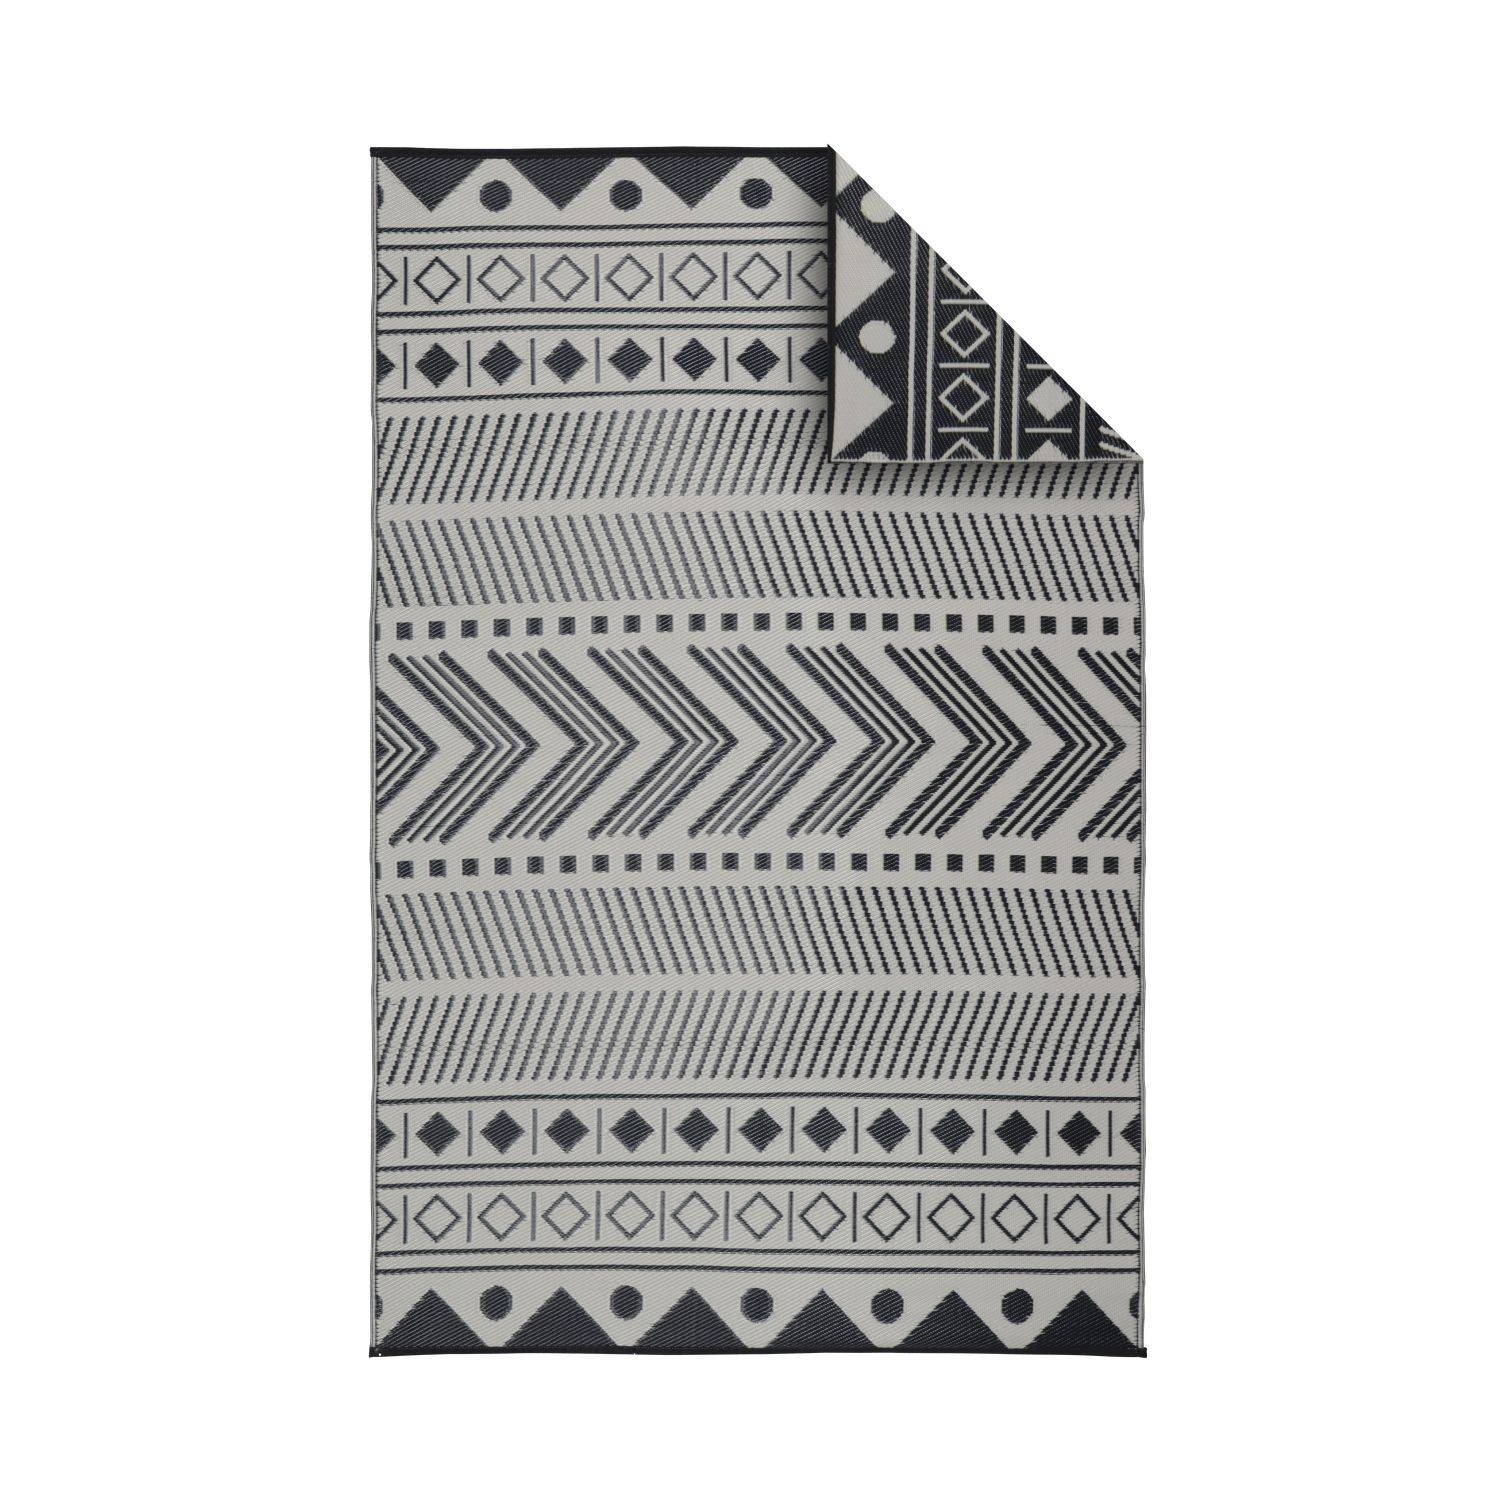 Outdoor rug - 180x270cm - Jacquard, reversible, rectangular, indoor/outdoor use - Bamako - Black-beige,sweeek,Photo1